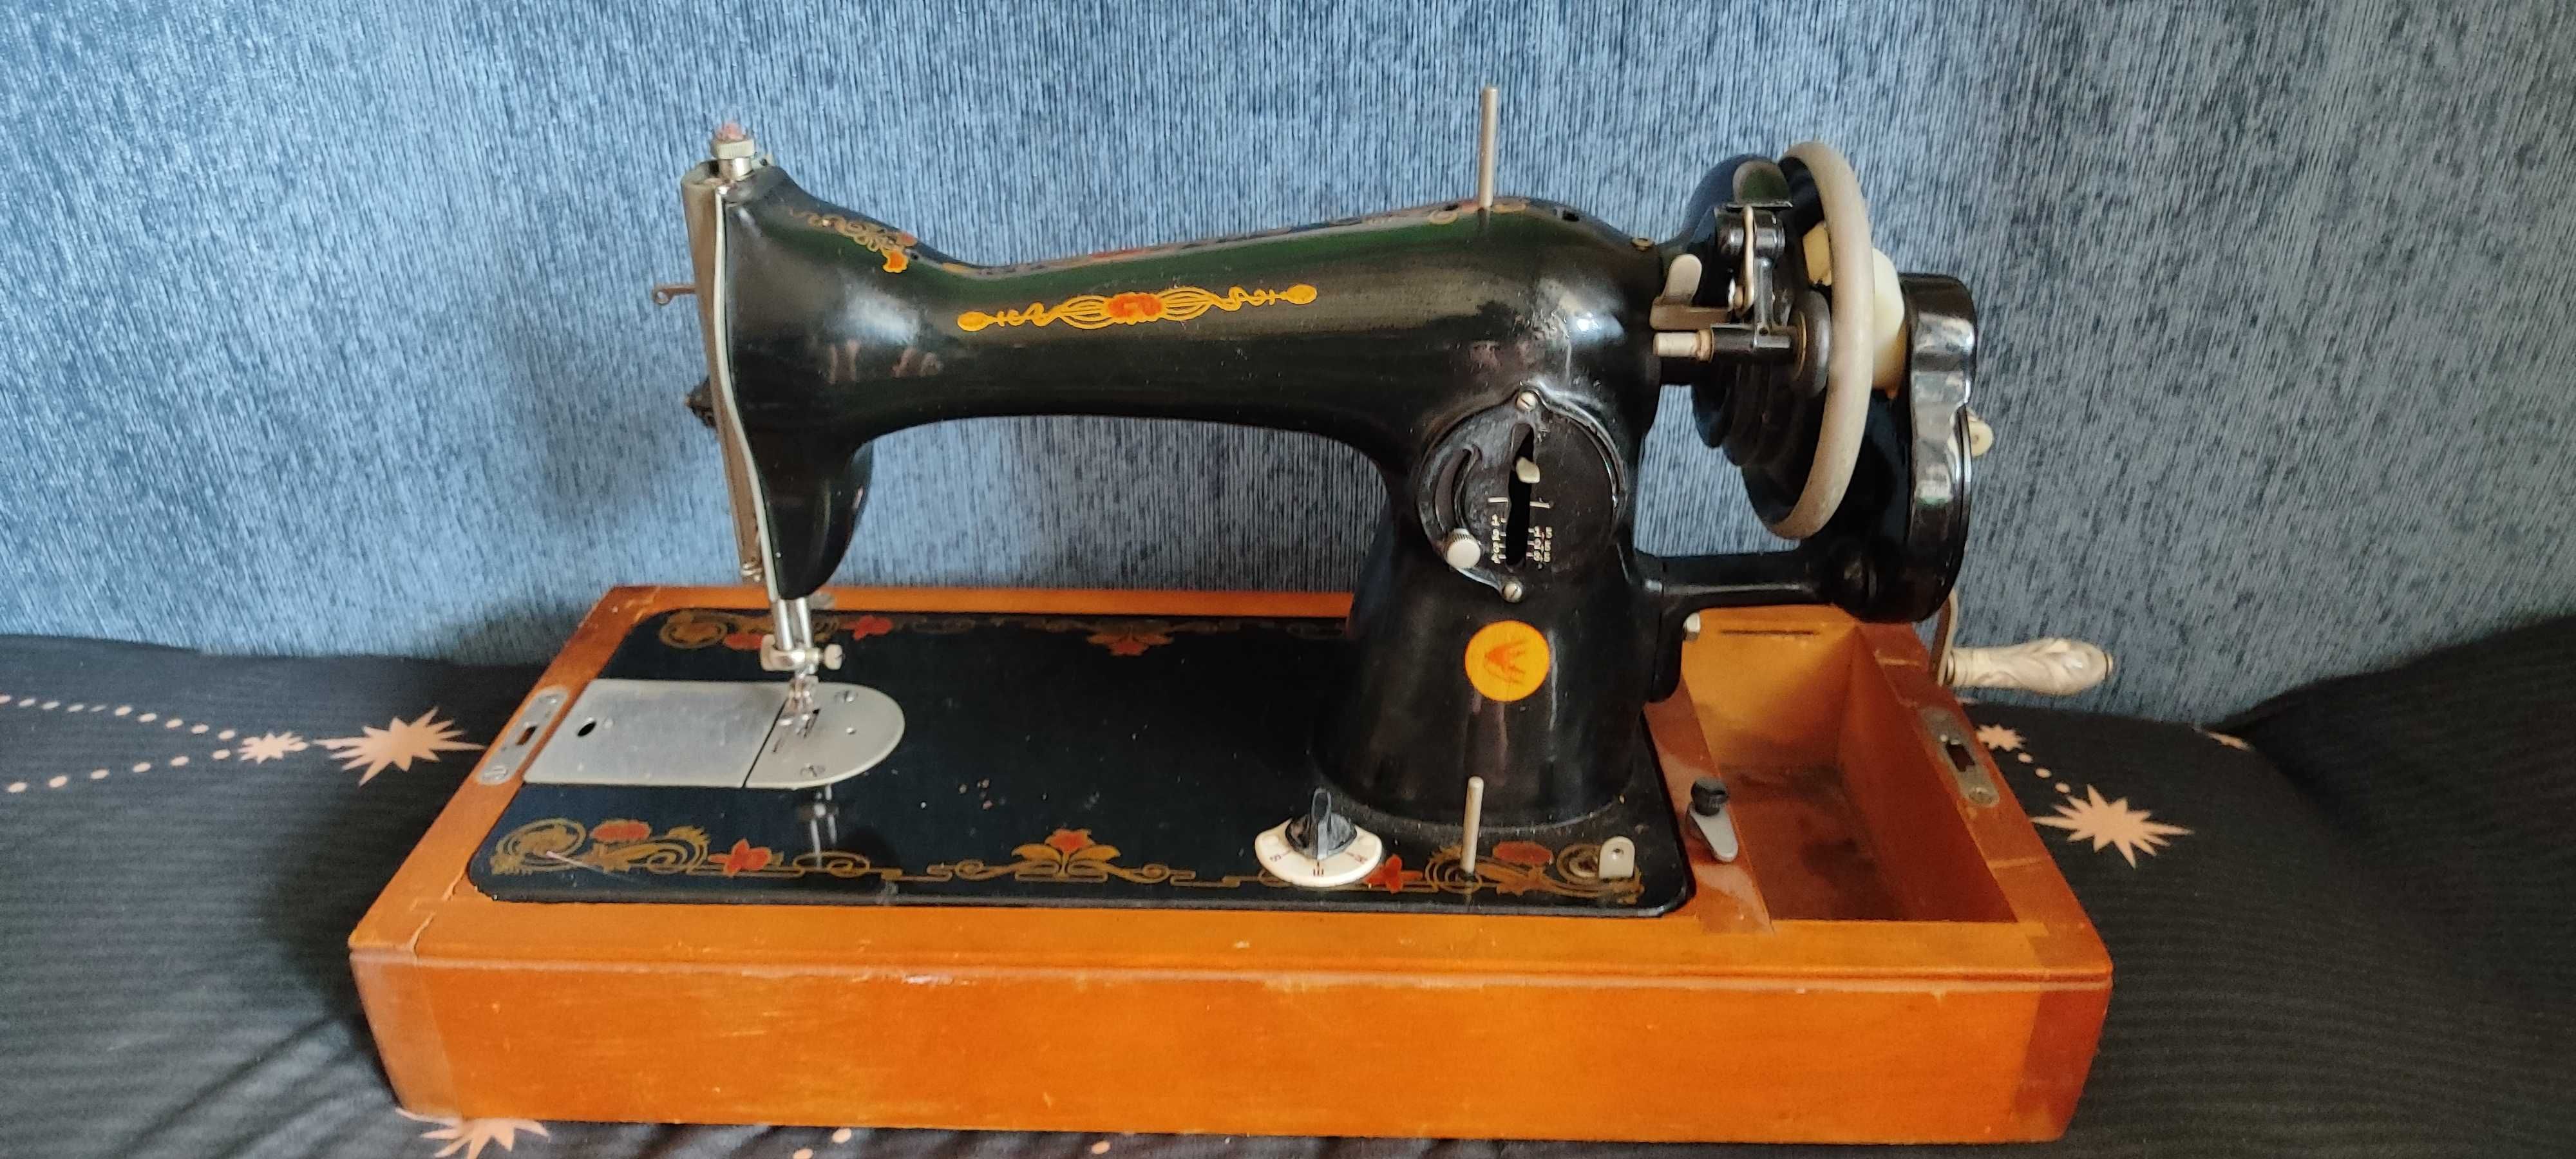 Продам: советскую швейную машинку